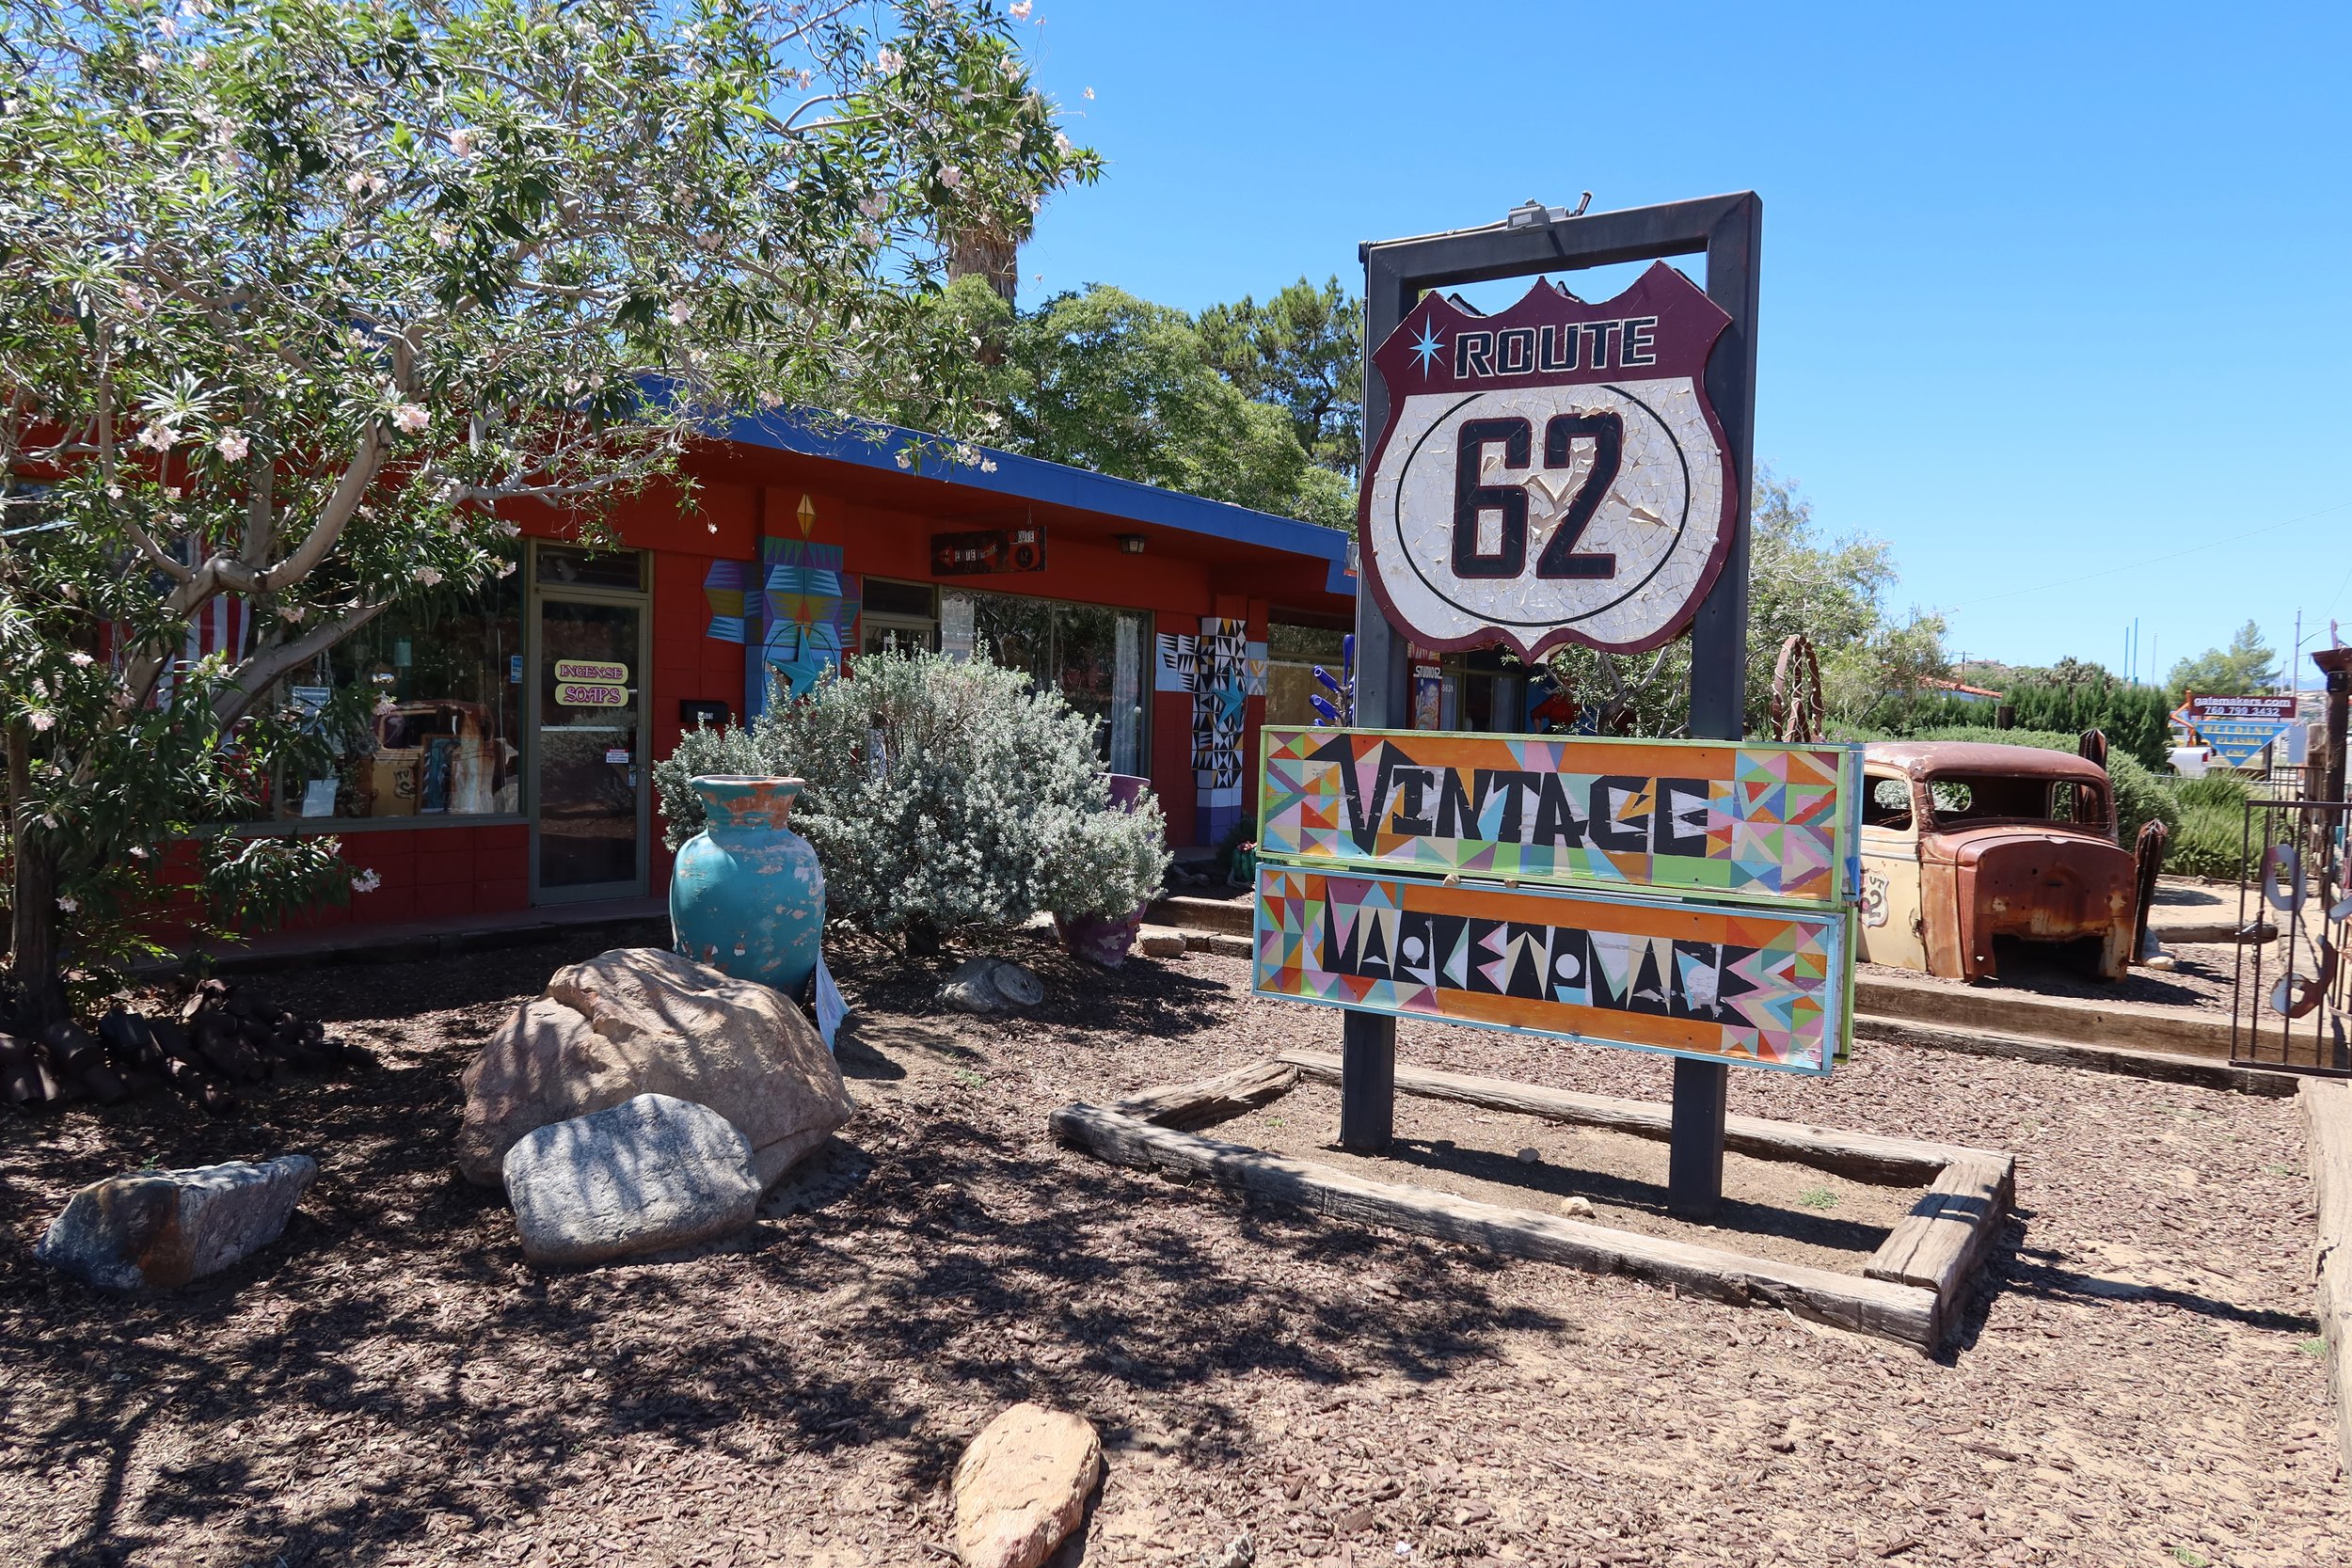 Route 62 vintage marketplace